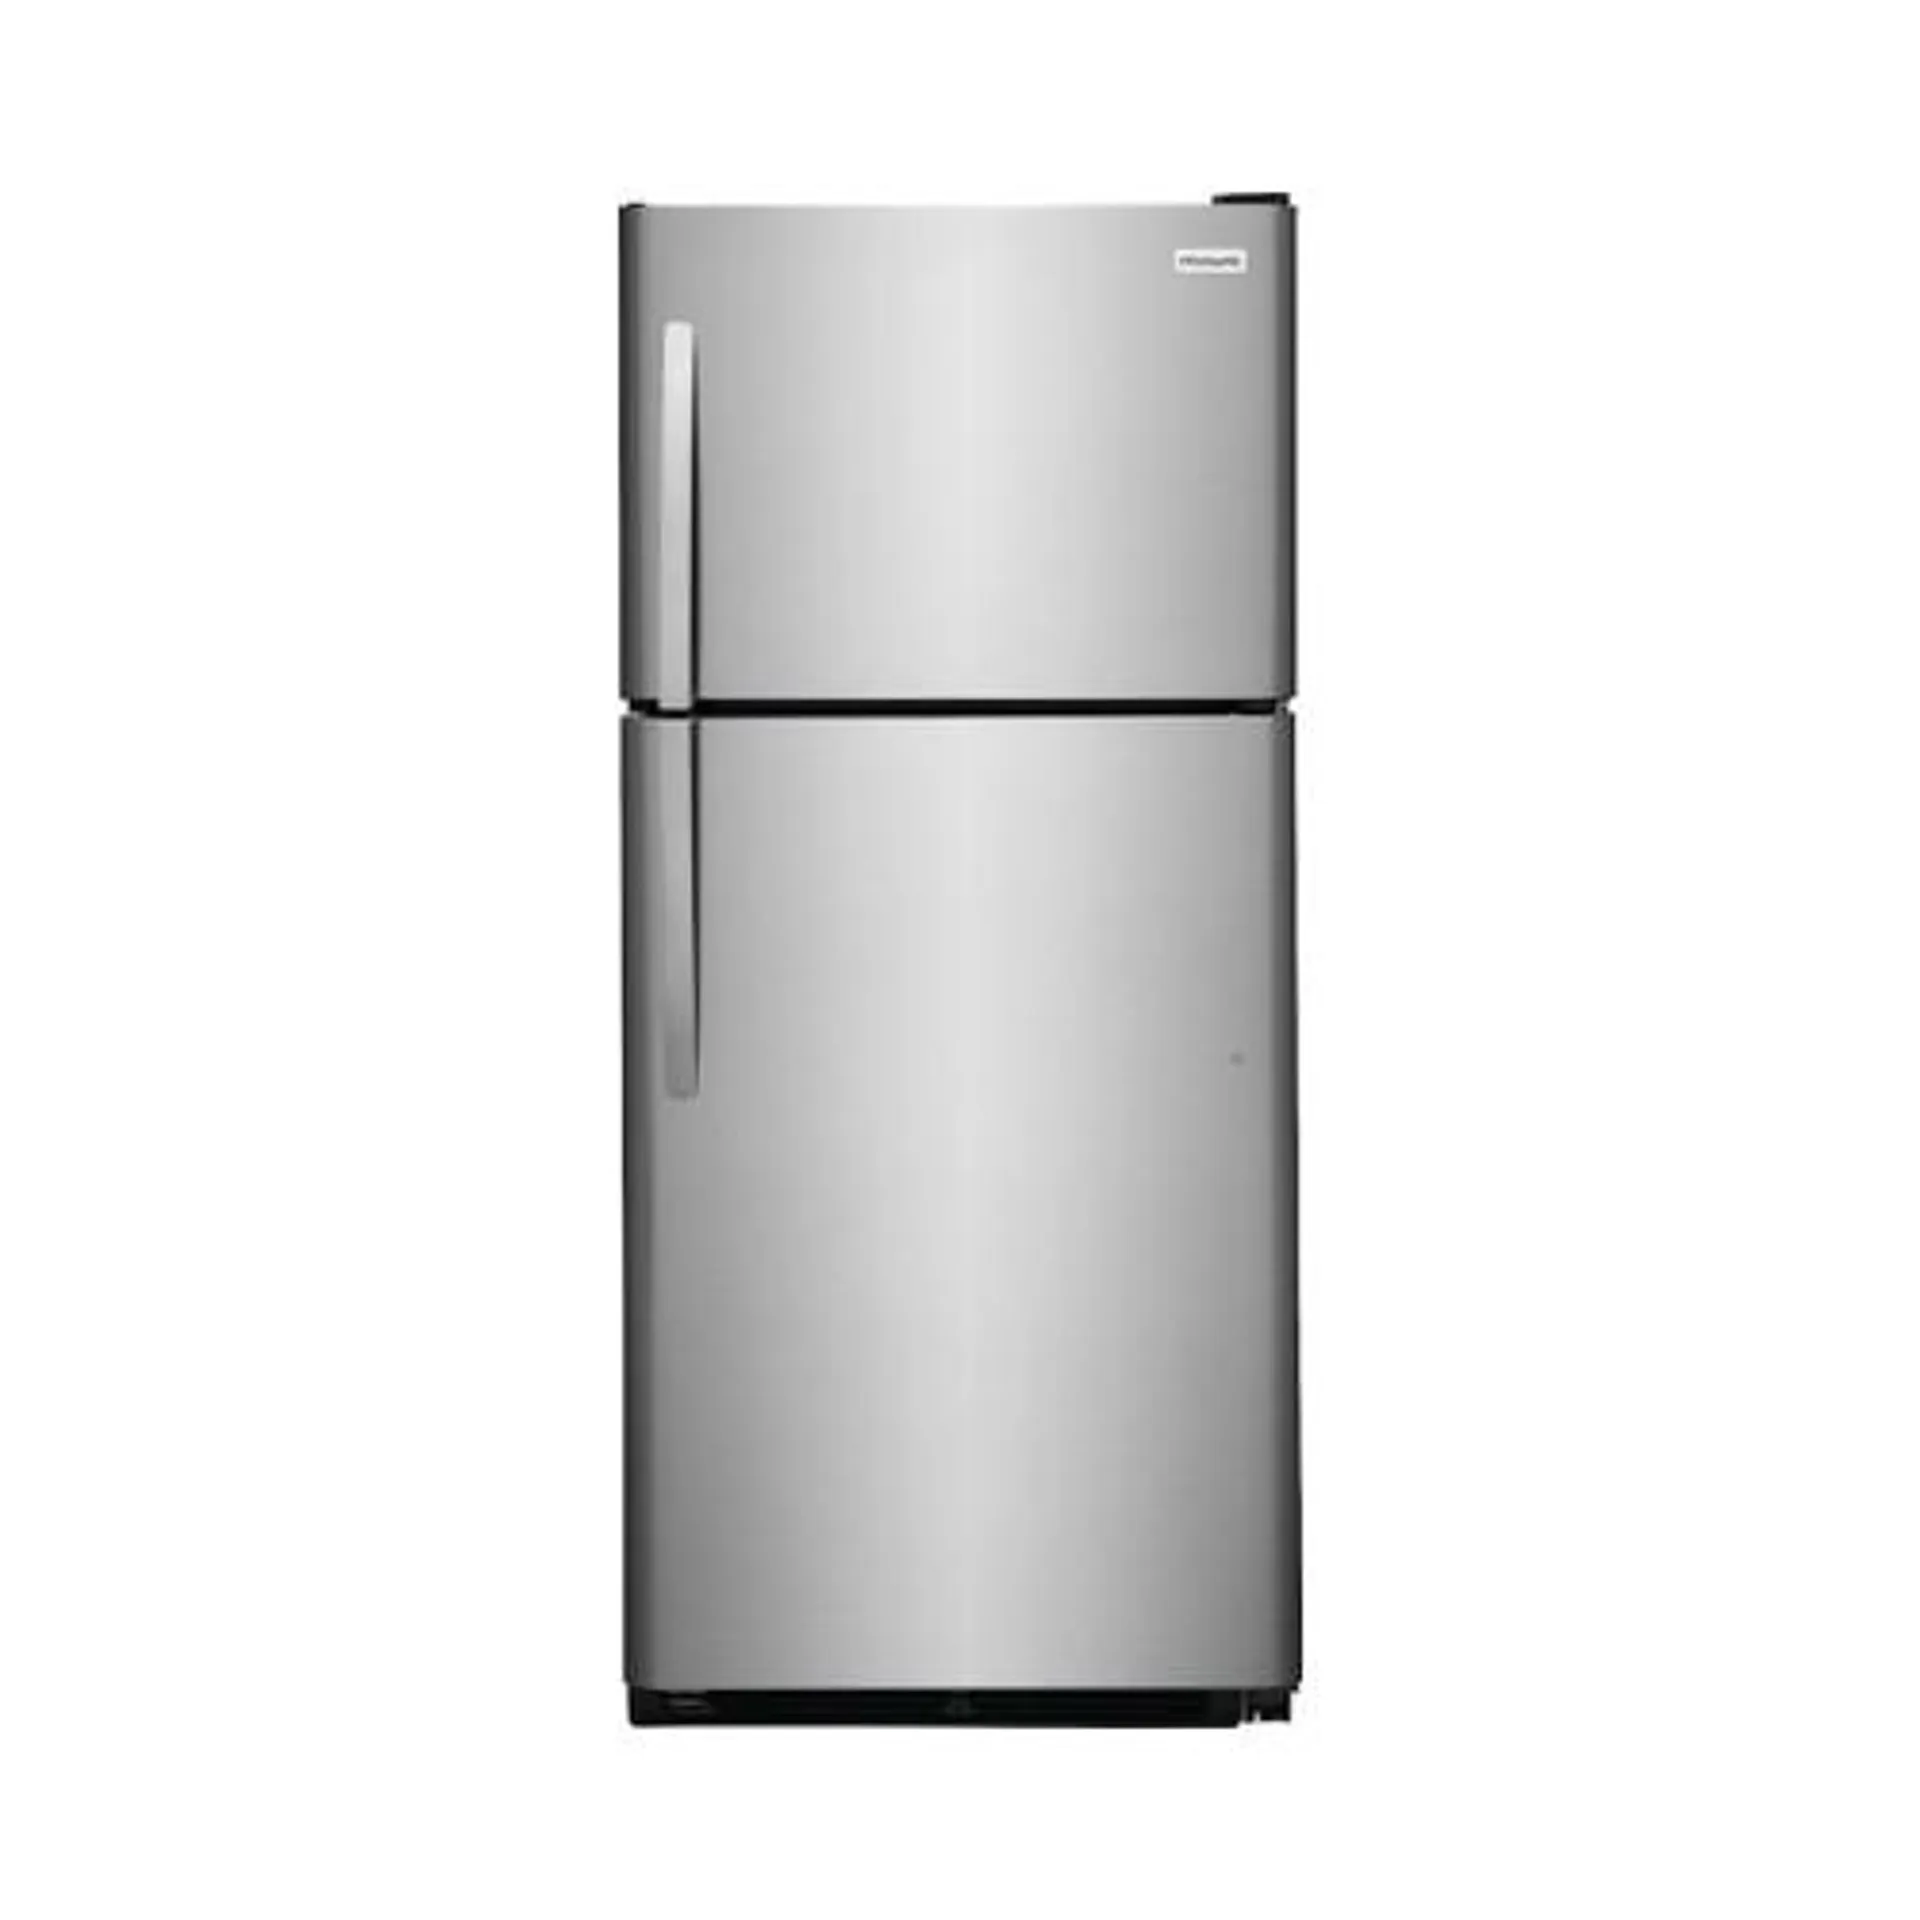 Frigidaire 20.5 Cu. Ft. Top Freezer Refrigerator - FRTD2021AS